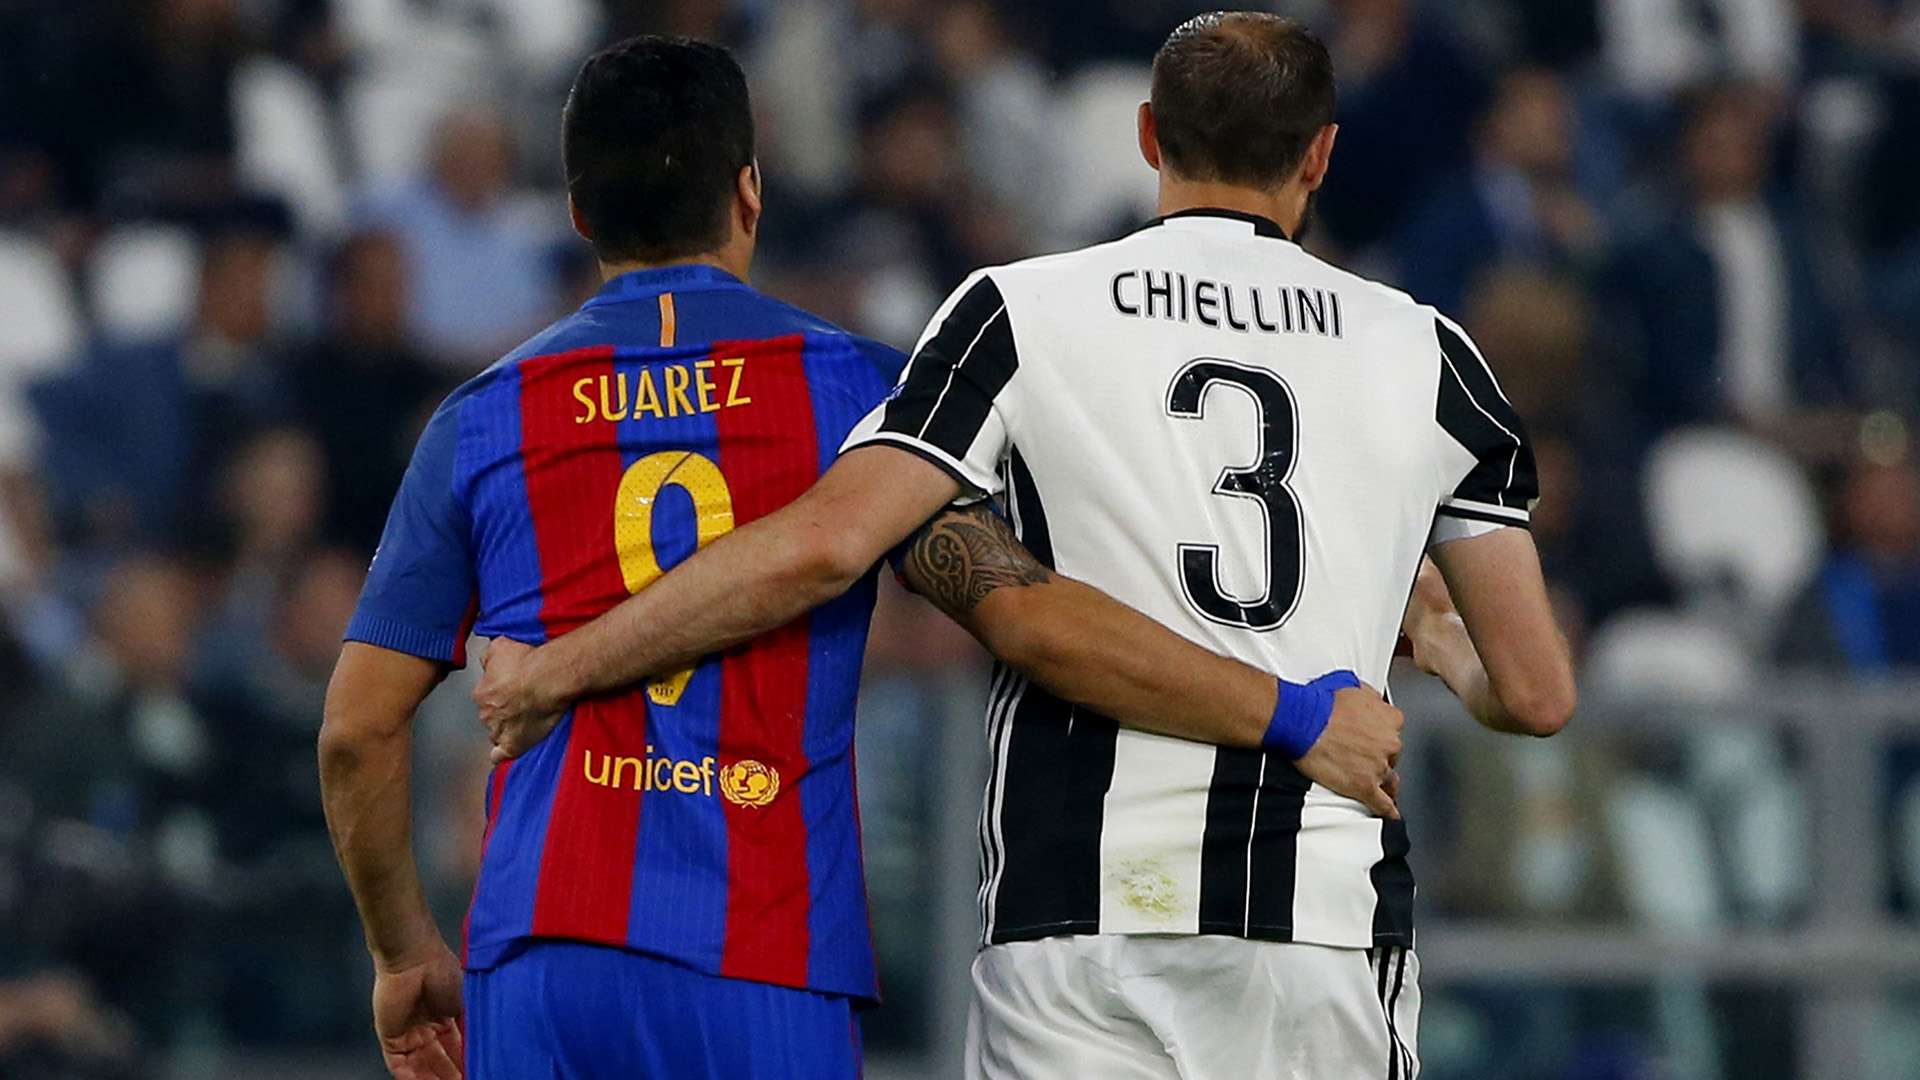 Suarez Chiellini Juventus Barcellona Champions League